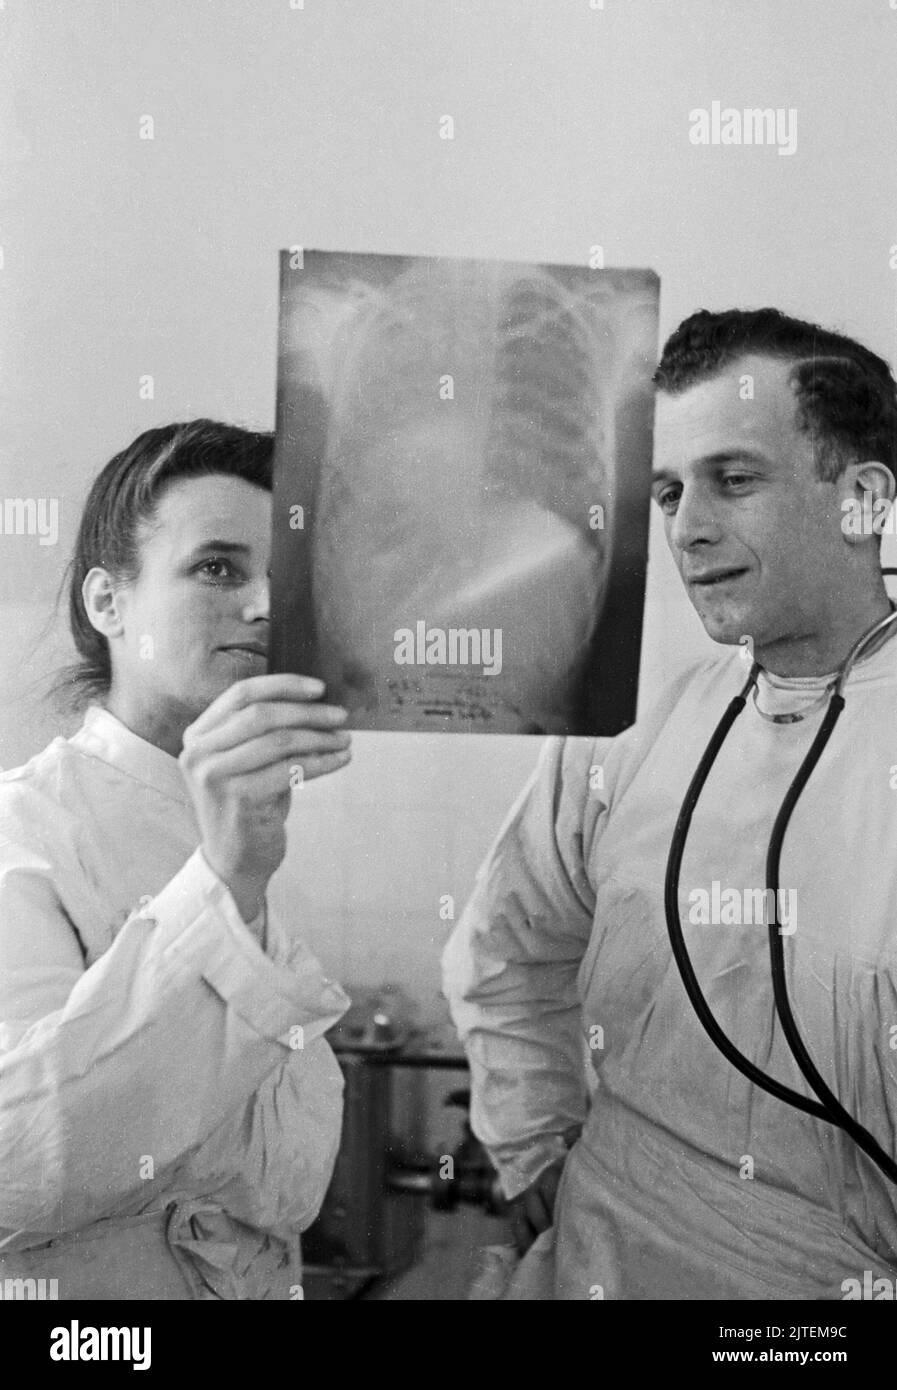 Kampf der Tuberkulose im TBC Kinderkrankenhaus in Neukölln, hier sehen sich zwei Ärzte ein Röntgenbild an, Berlin, Deutschland 1947. Stock Photo